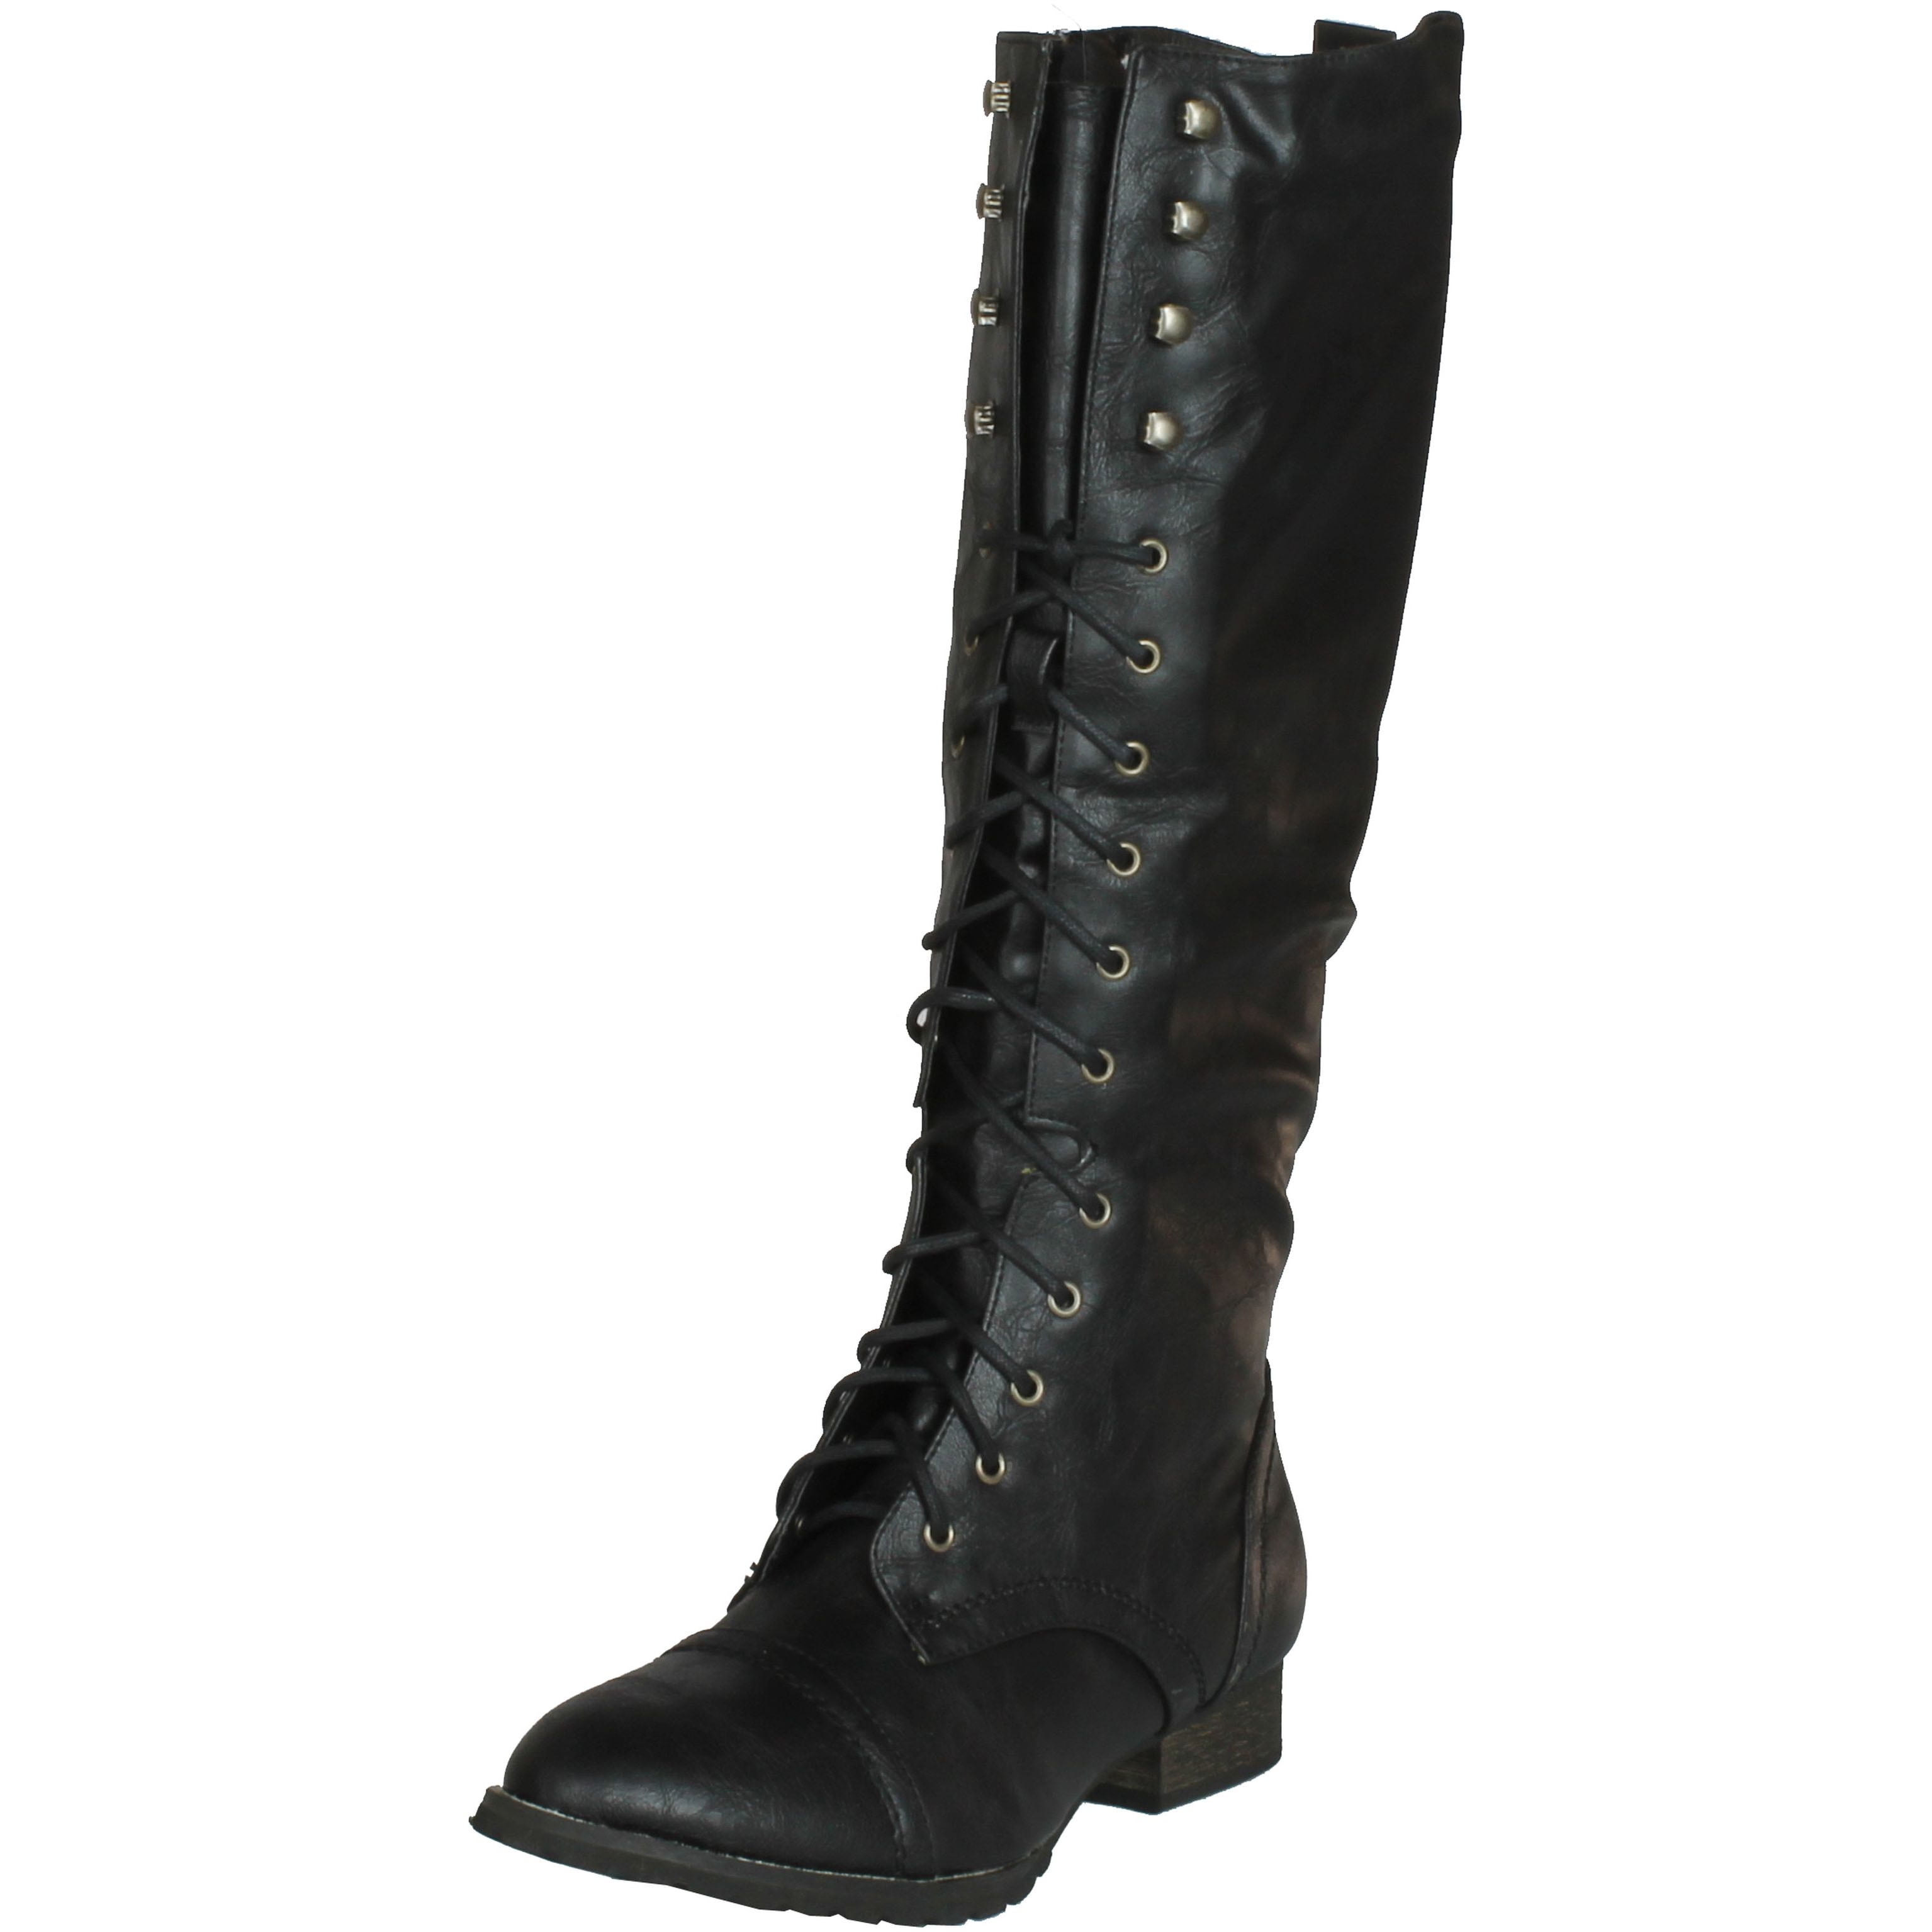 Breckelles Women Outlaw-13 boots, Black., 6.5 - Walmart.com